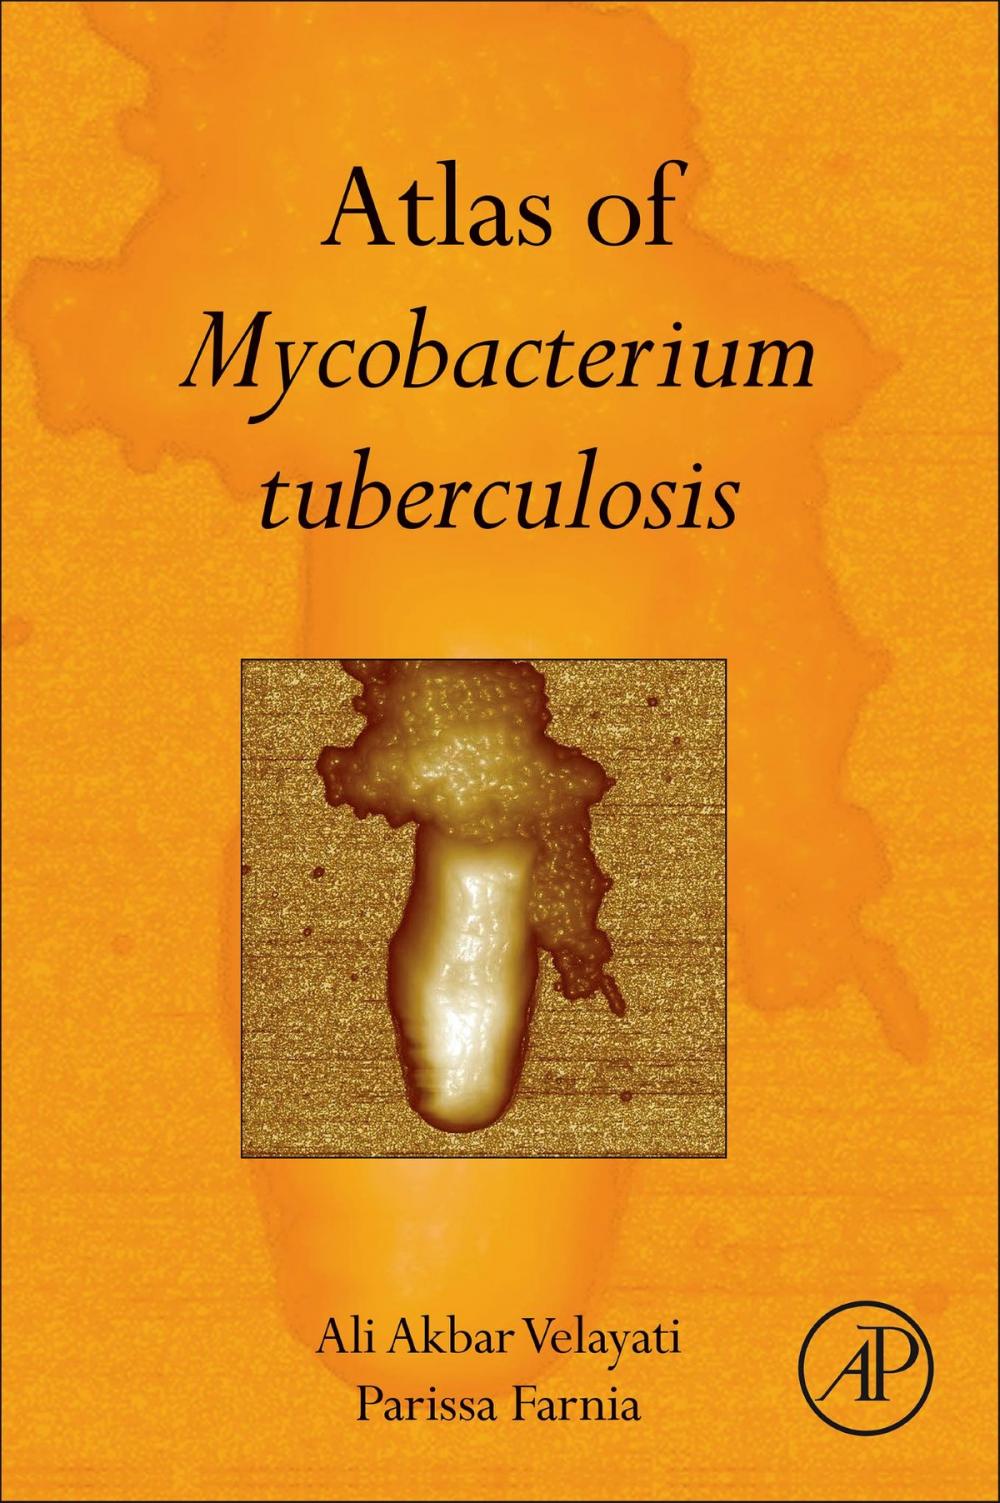 Big bigCover of Atlas of Mycobacterium Tuberculosis